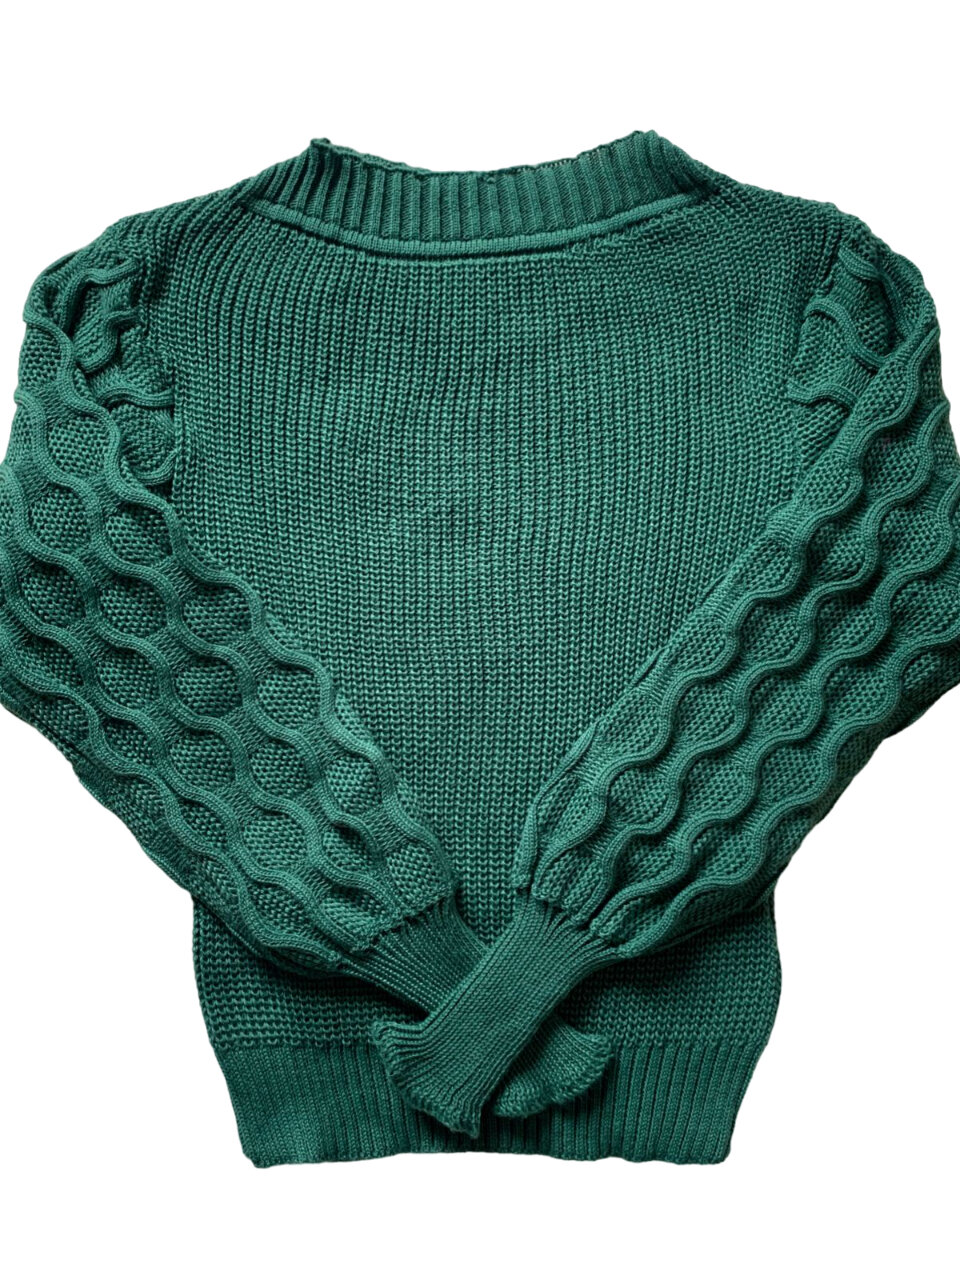 modelos de blusas femininas - tricot